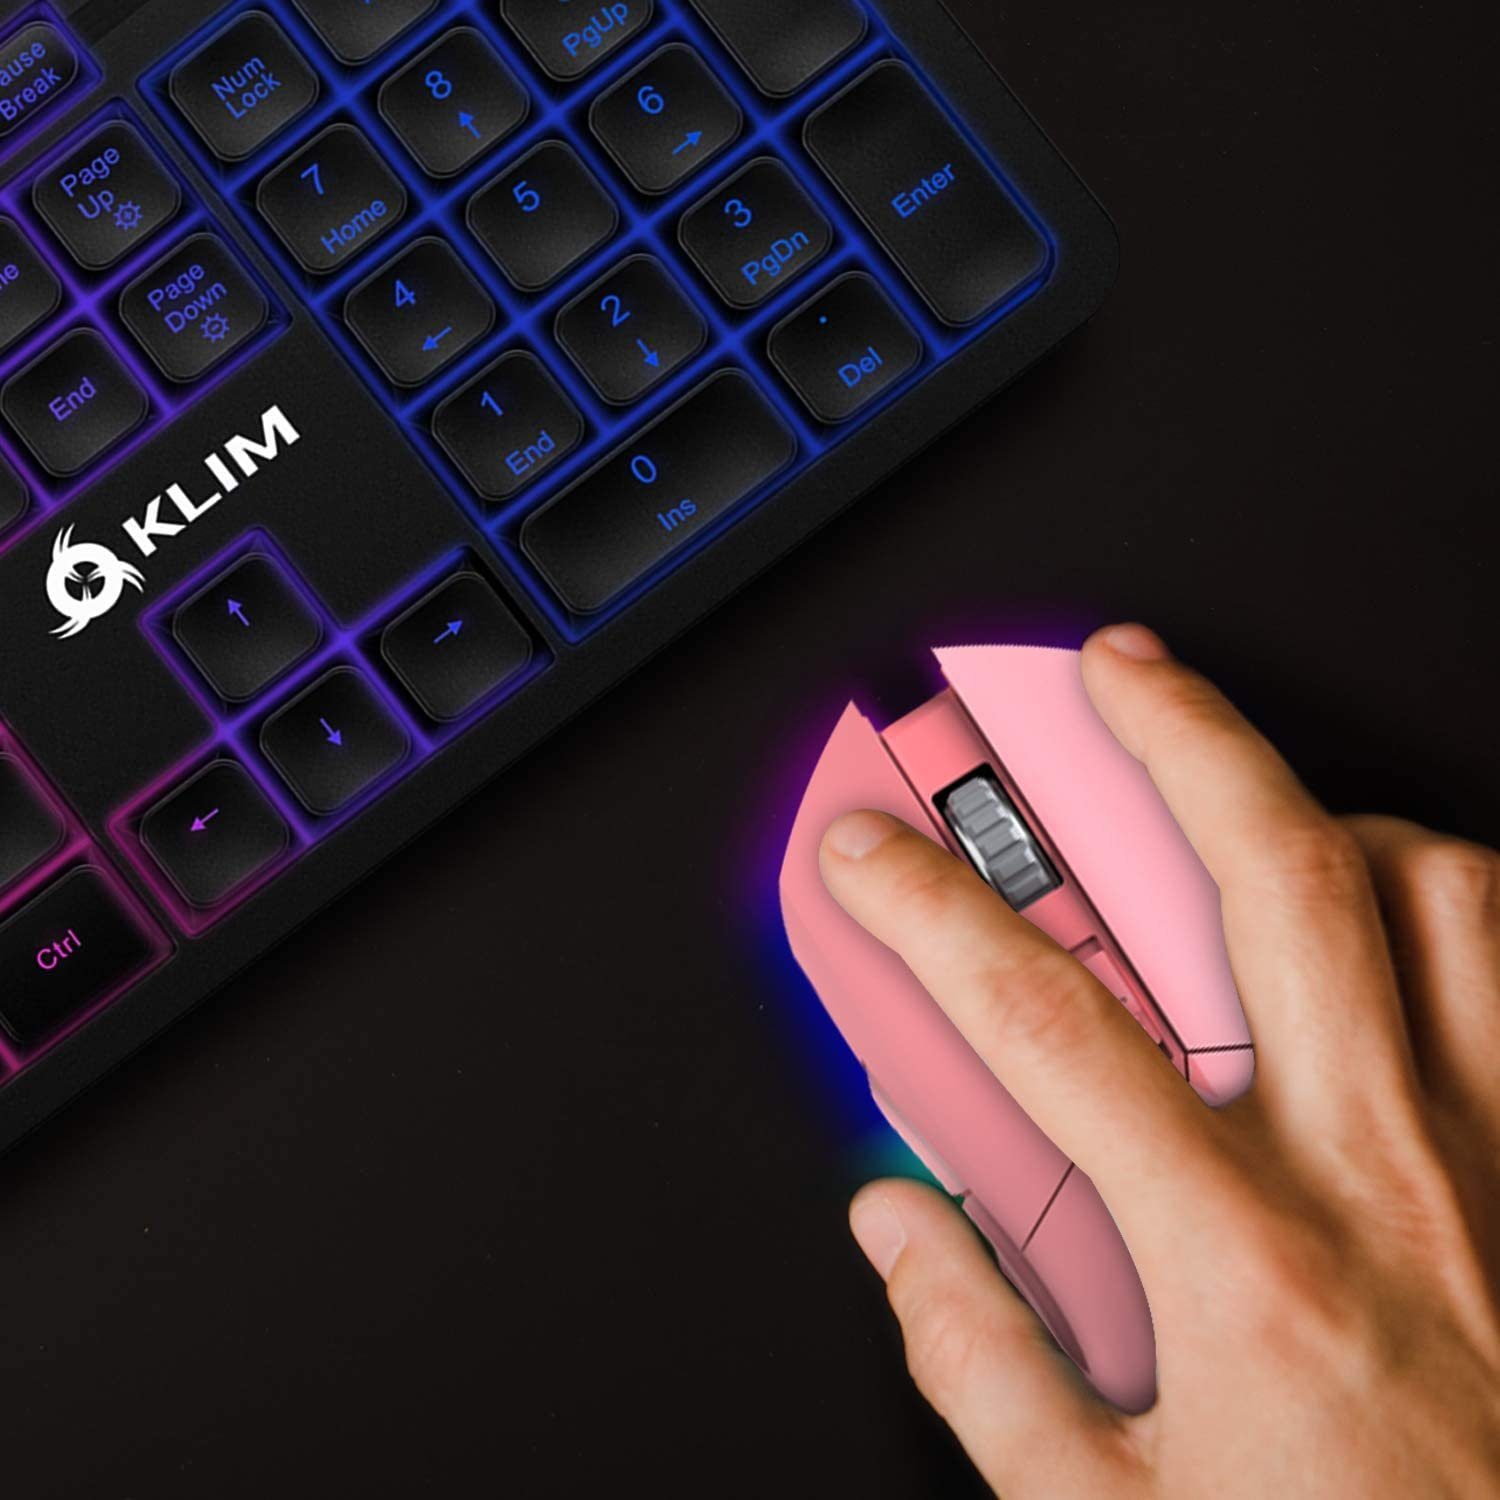 KLIM Blaze Black wireless DPI-Anpassung Gaming-Maus für  mit Gaming-Maus, (Funk, Pink wiederaufladbar) hochleistungs ergonomisch Hände, beide